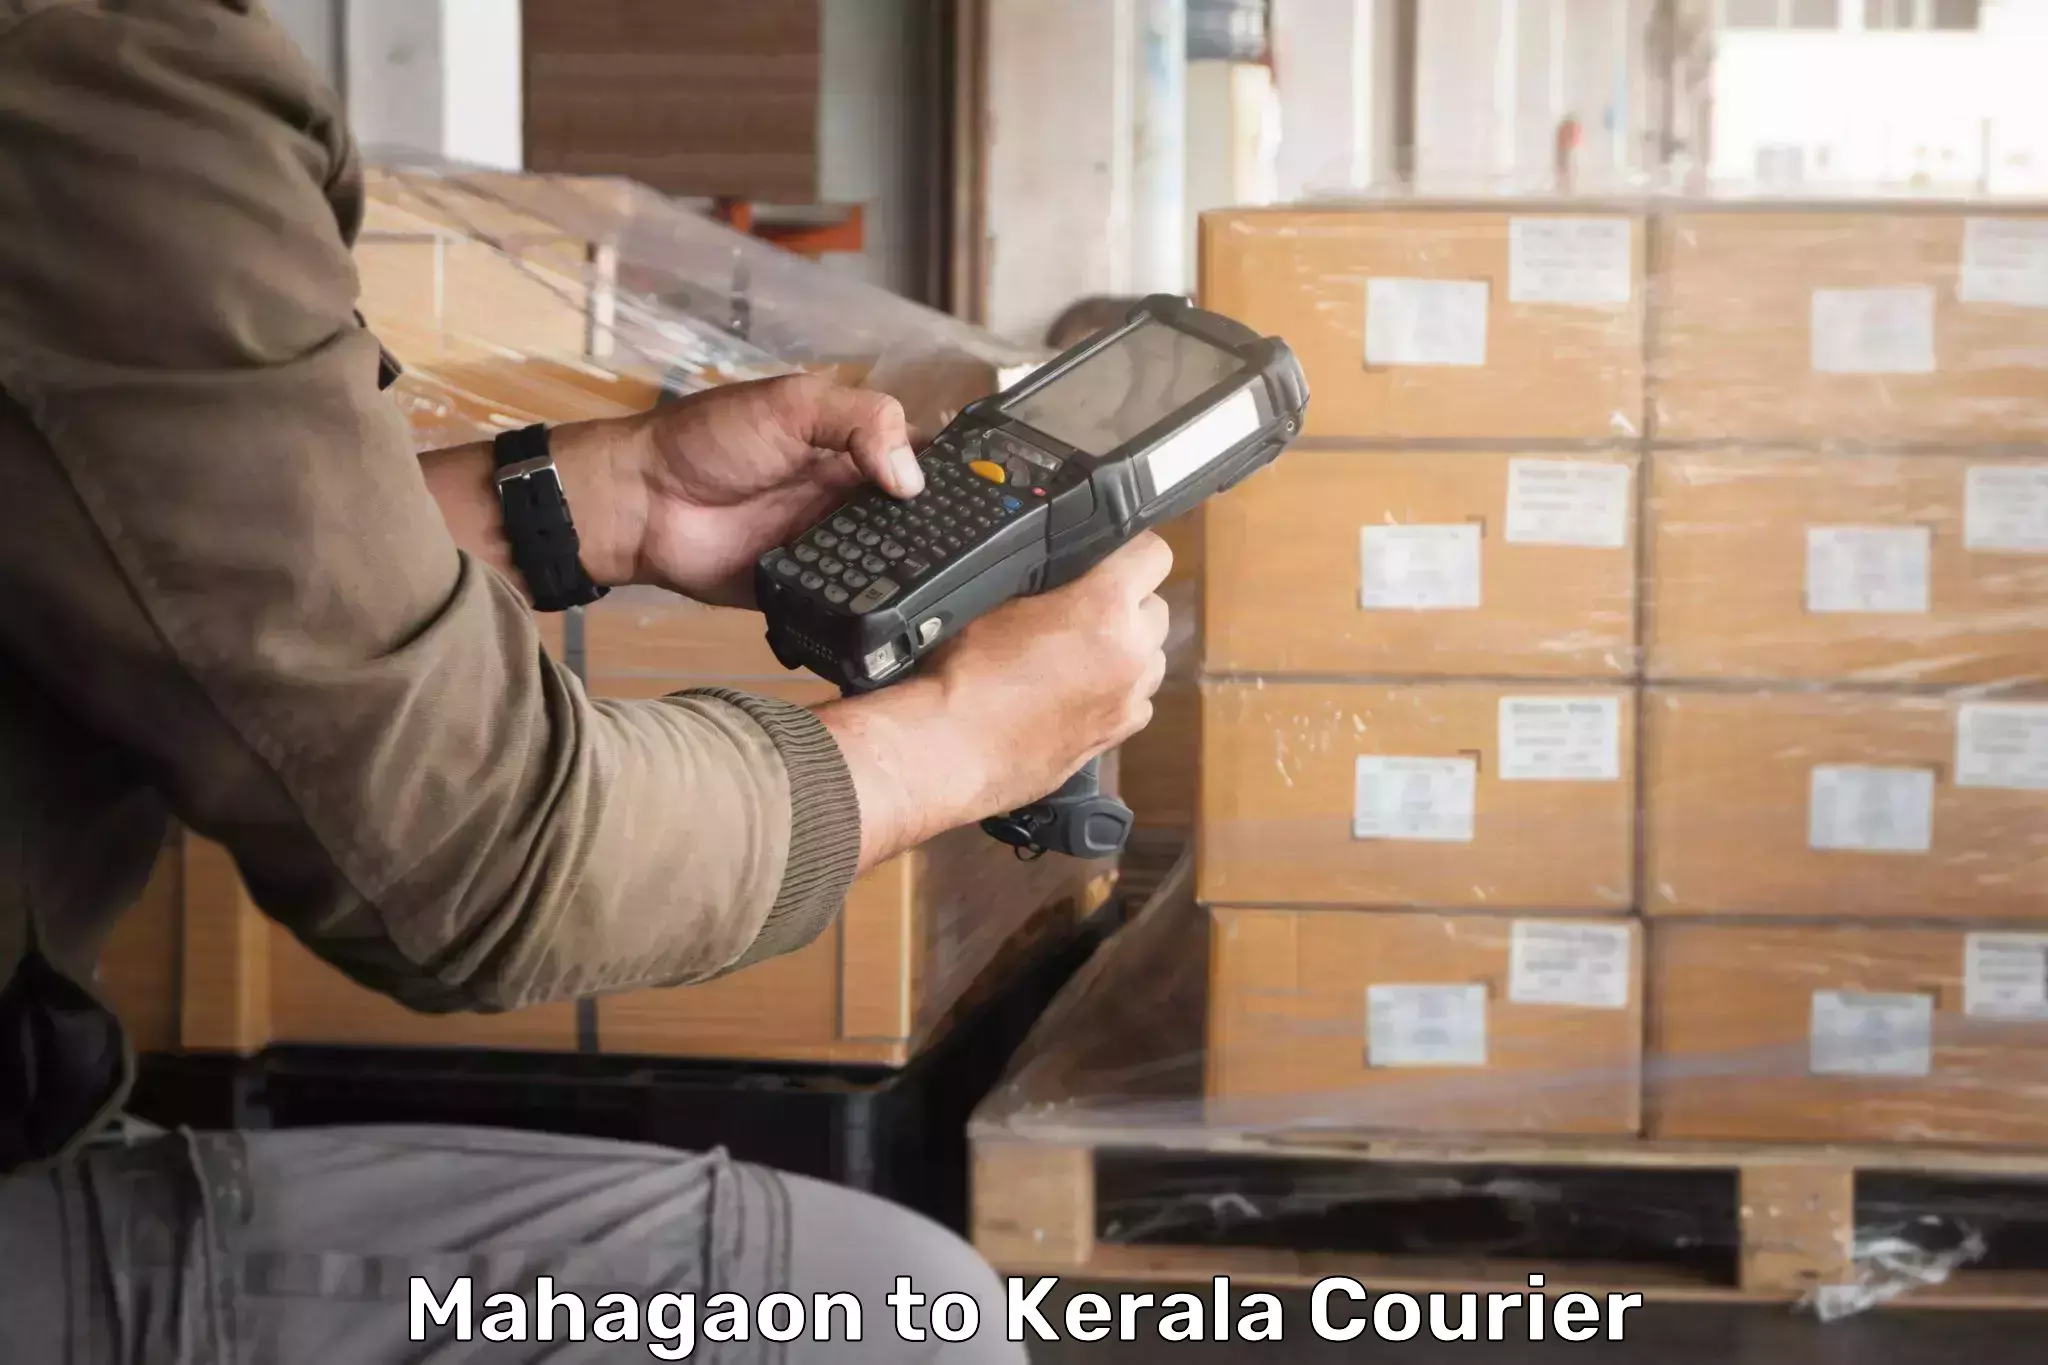 Domestic courier Mahagaon to Pallikkara